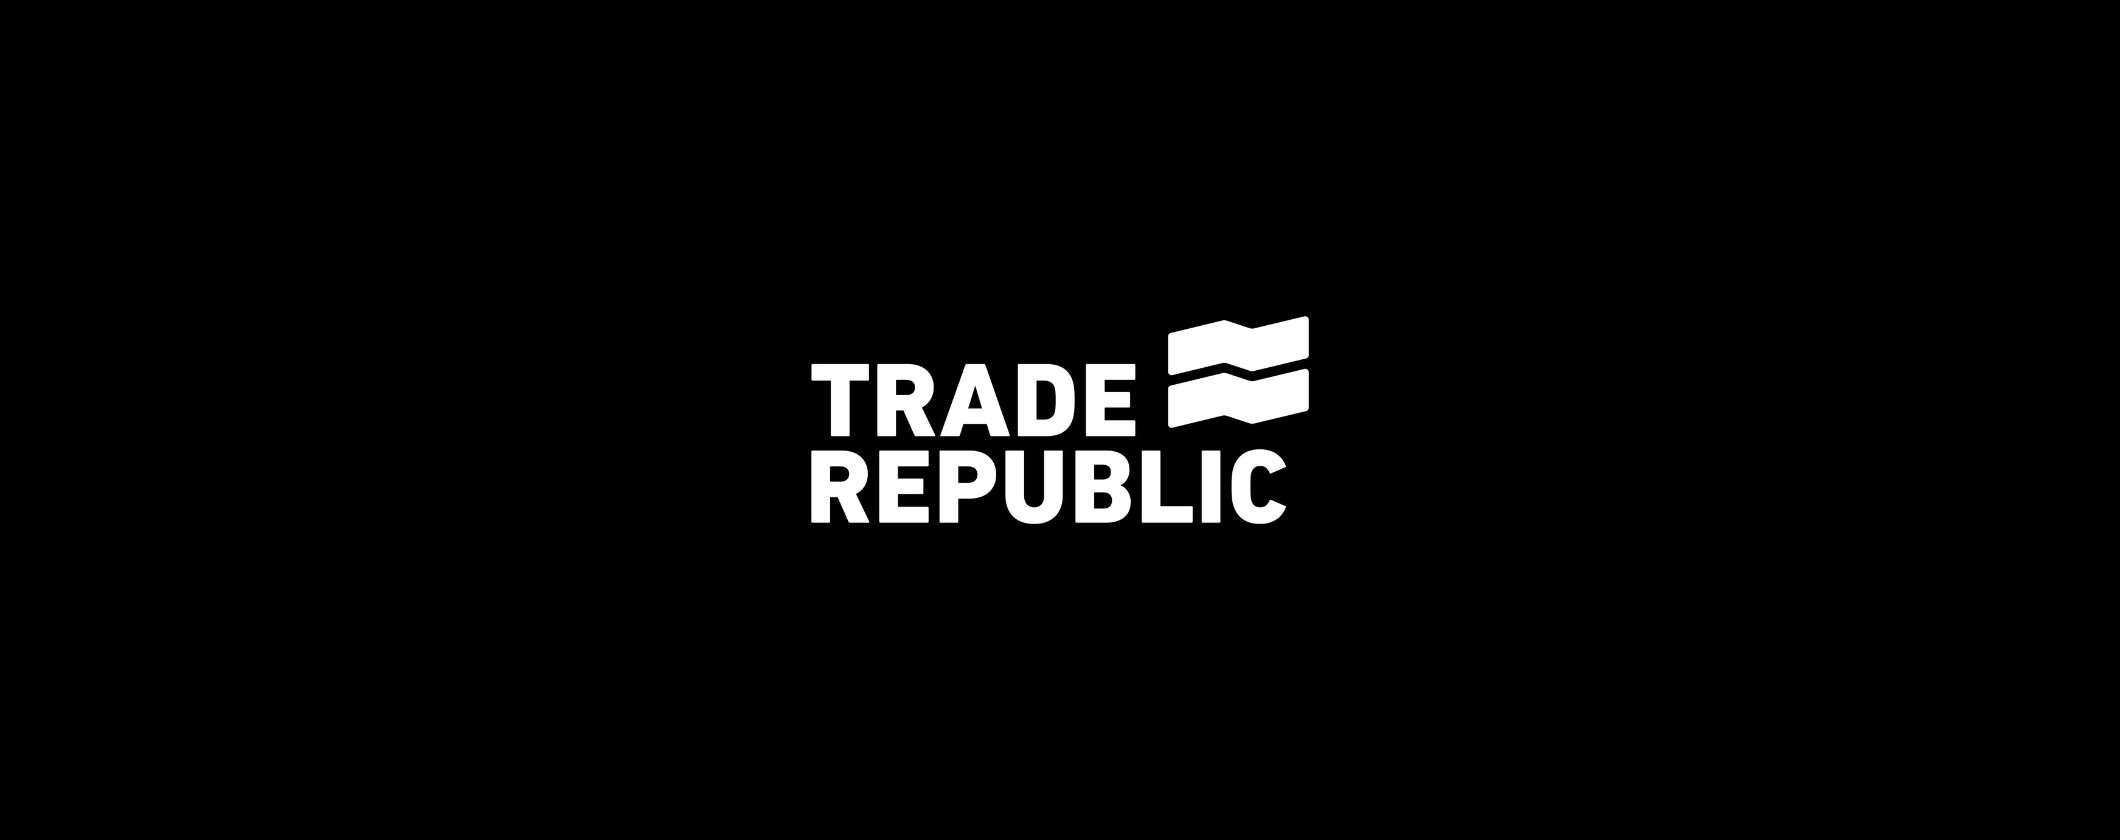 Trade Republic: ultimo giorno per ottenere il BONUS di 20€